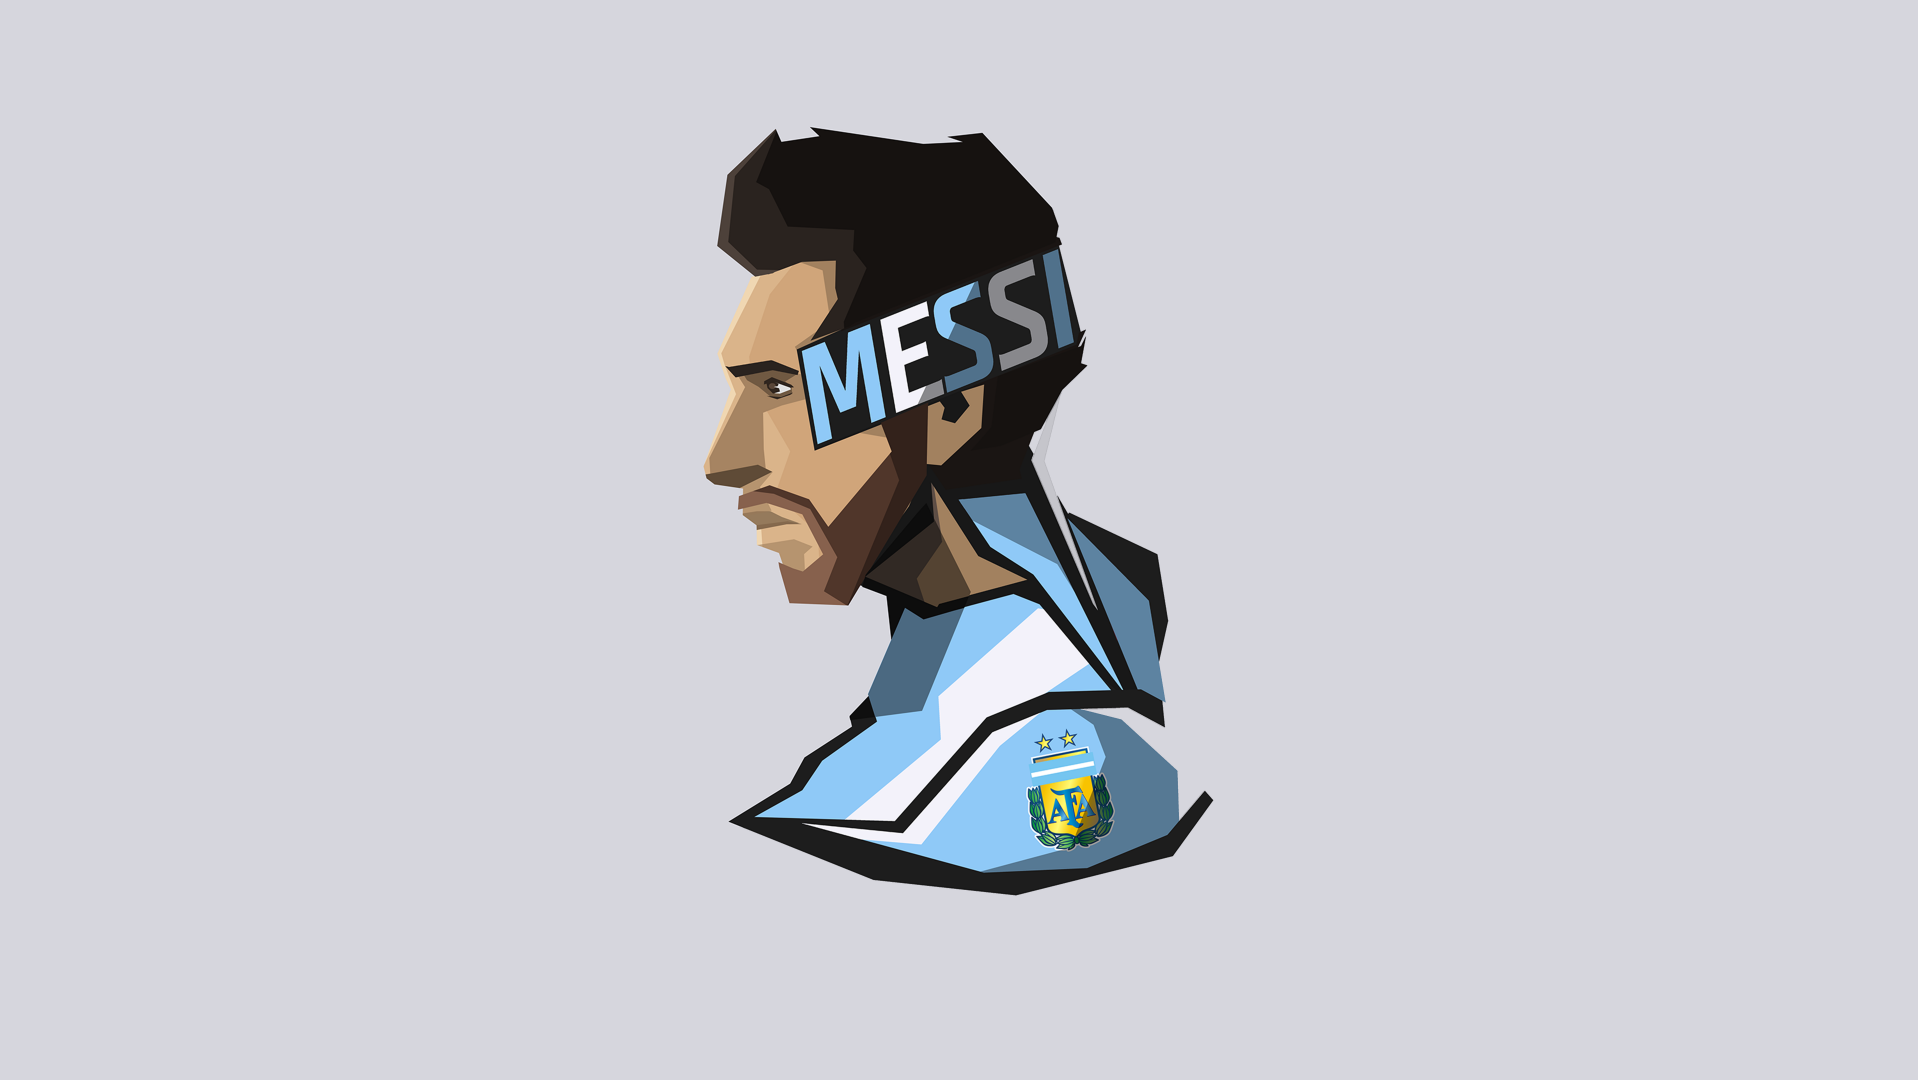 Hãy đón xem bộ sưu tập hình nền Ultra HD của Lionel Messi với chất lượng hình ảnh tuyệt đẹp, tạo ra một trải nghiệm tuyệt vời cho điện thoại của bạn. Thật không thể tin được rằng Lionel Messi lại trông tuyệt đẹp đến vậy trên màn hình điện thoại của bạn.